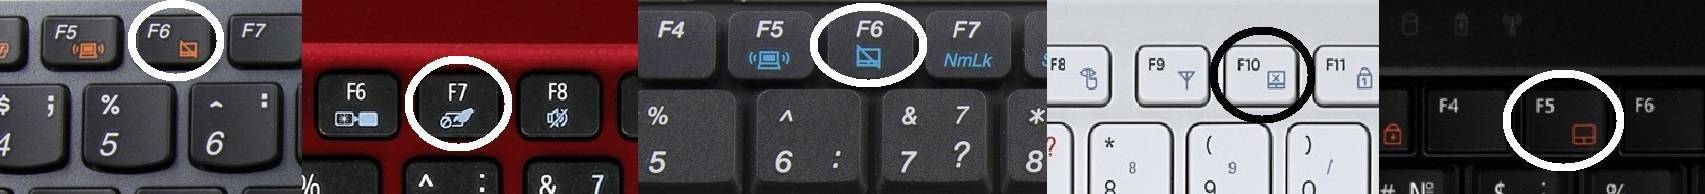 Причины неработоспособности клавиши «fn» на ноутбуке asus